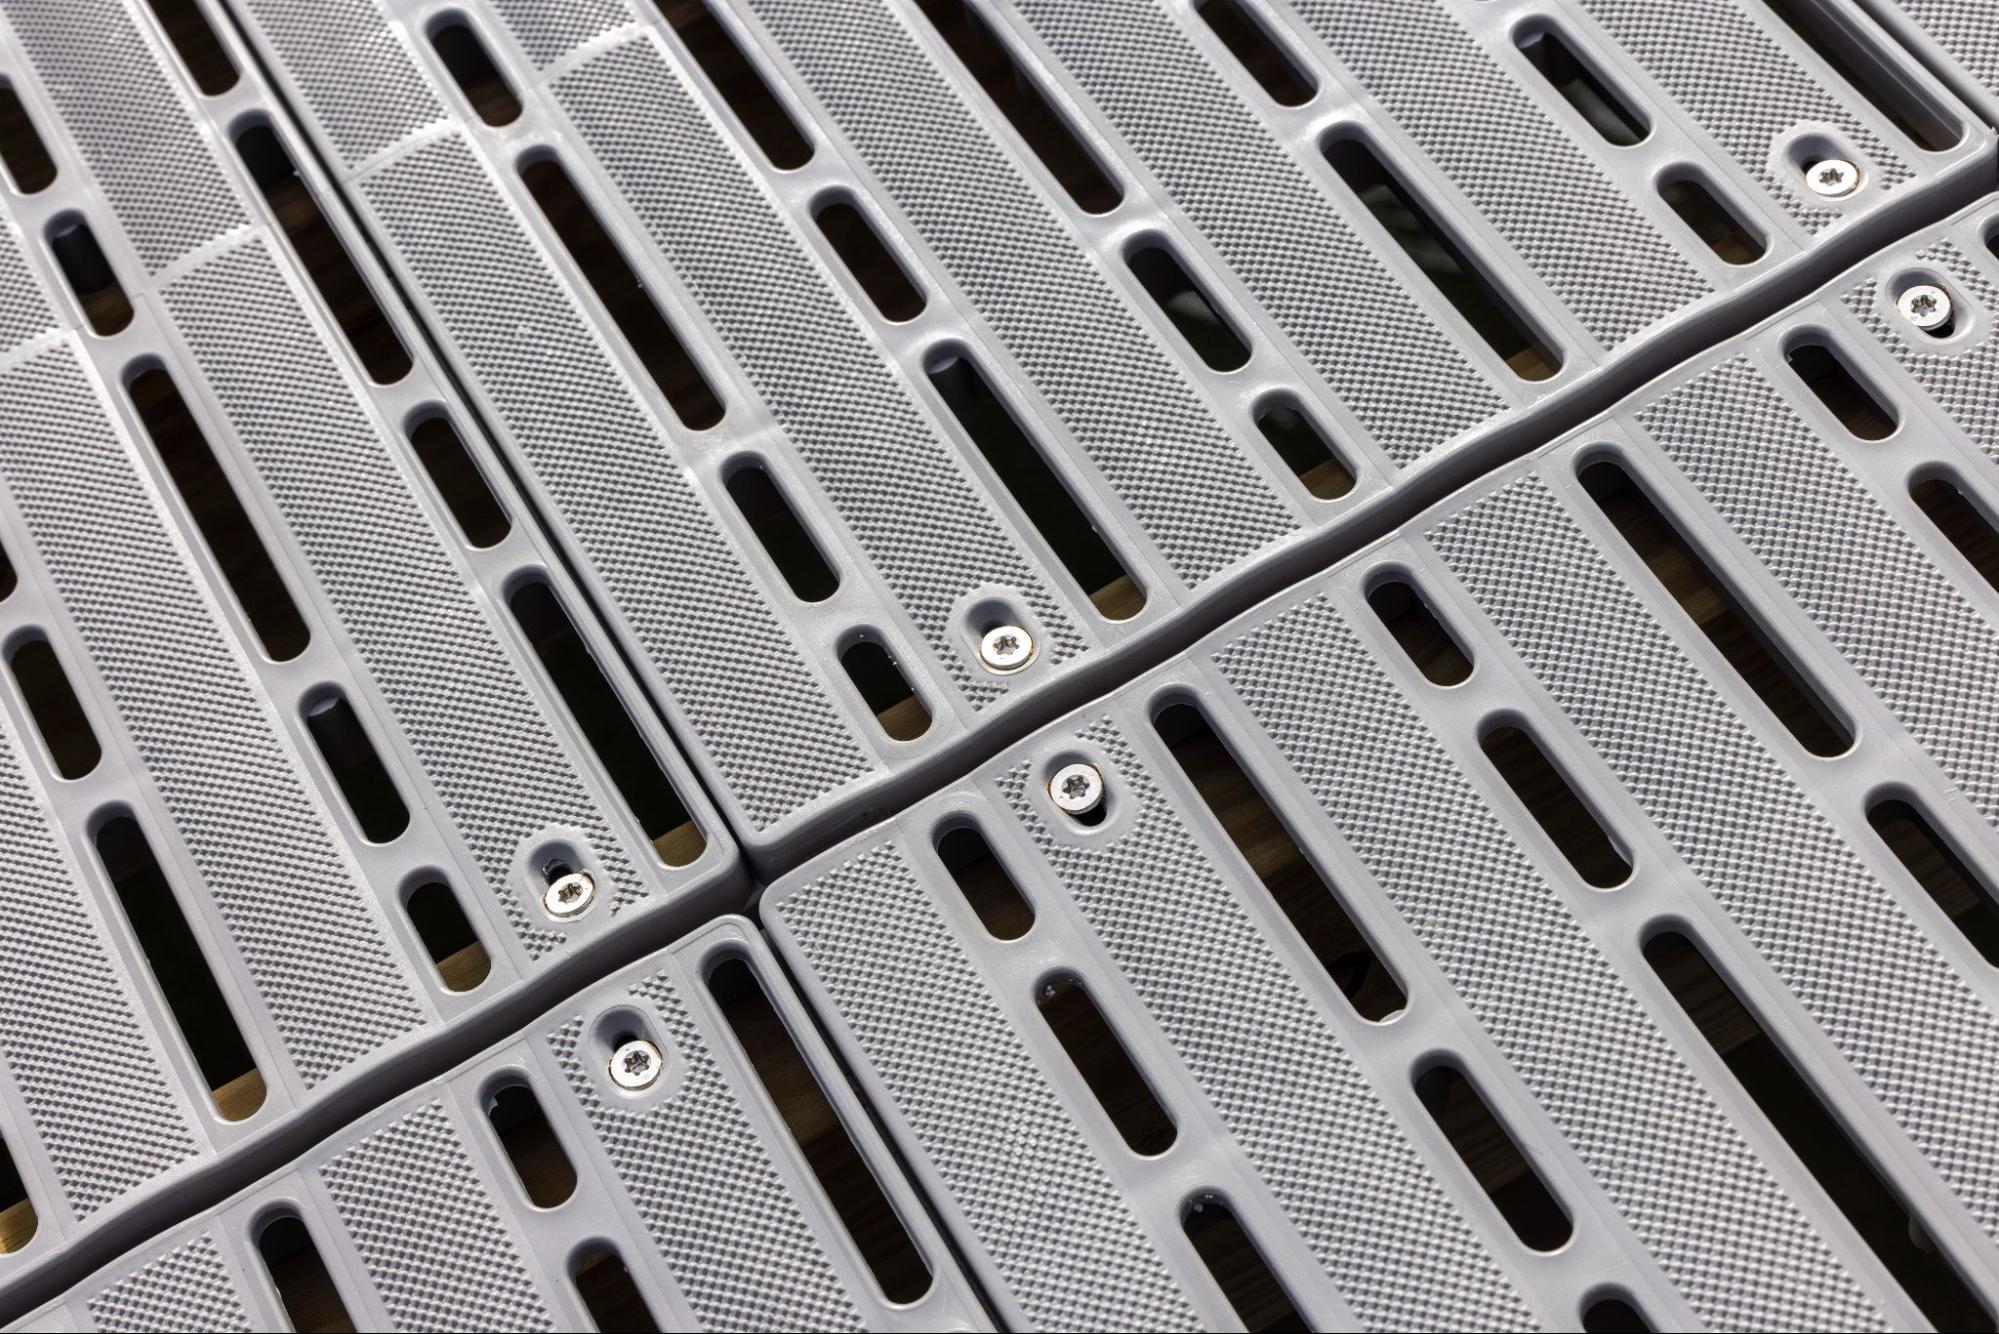 An up close image of a polypropylene deck.